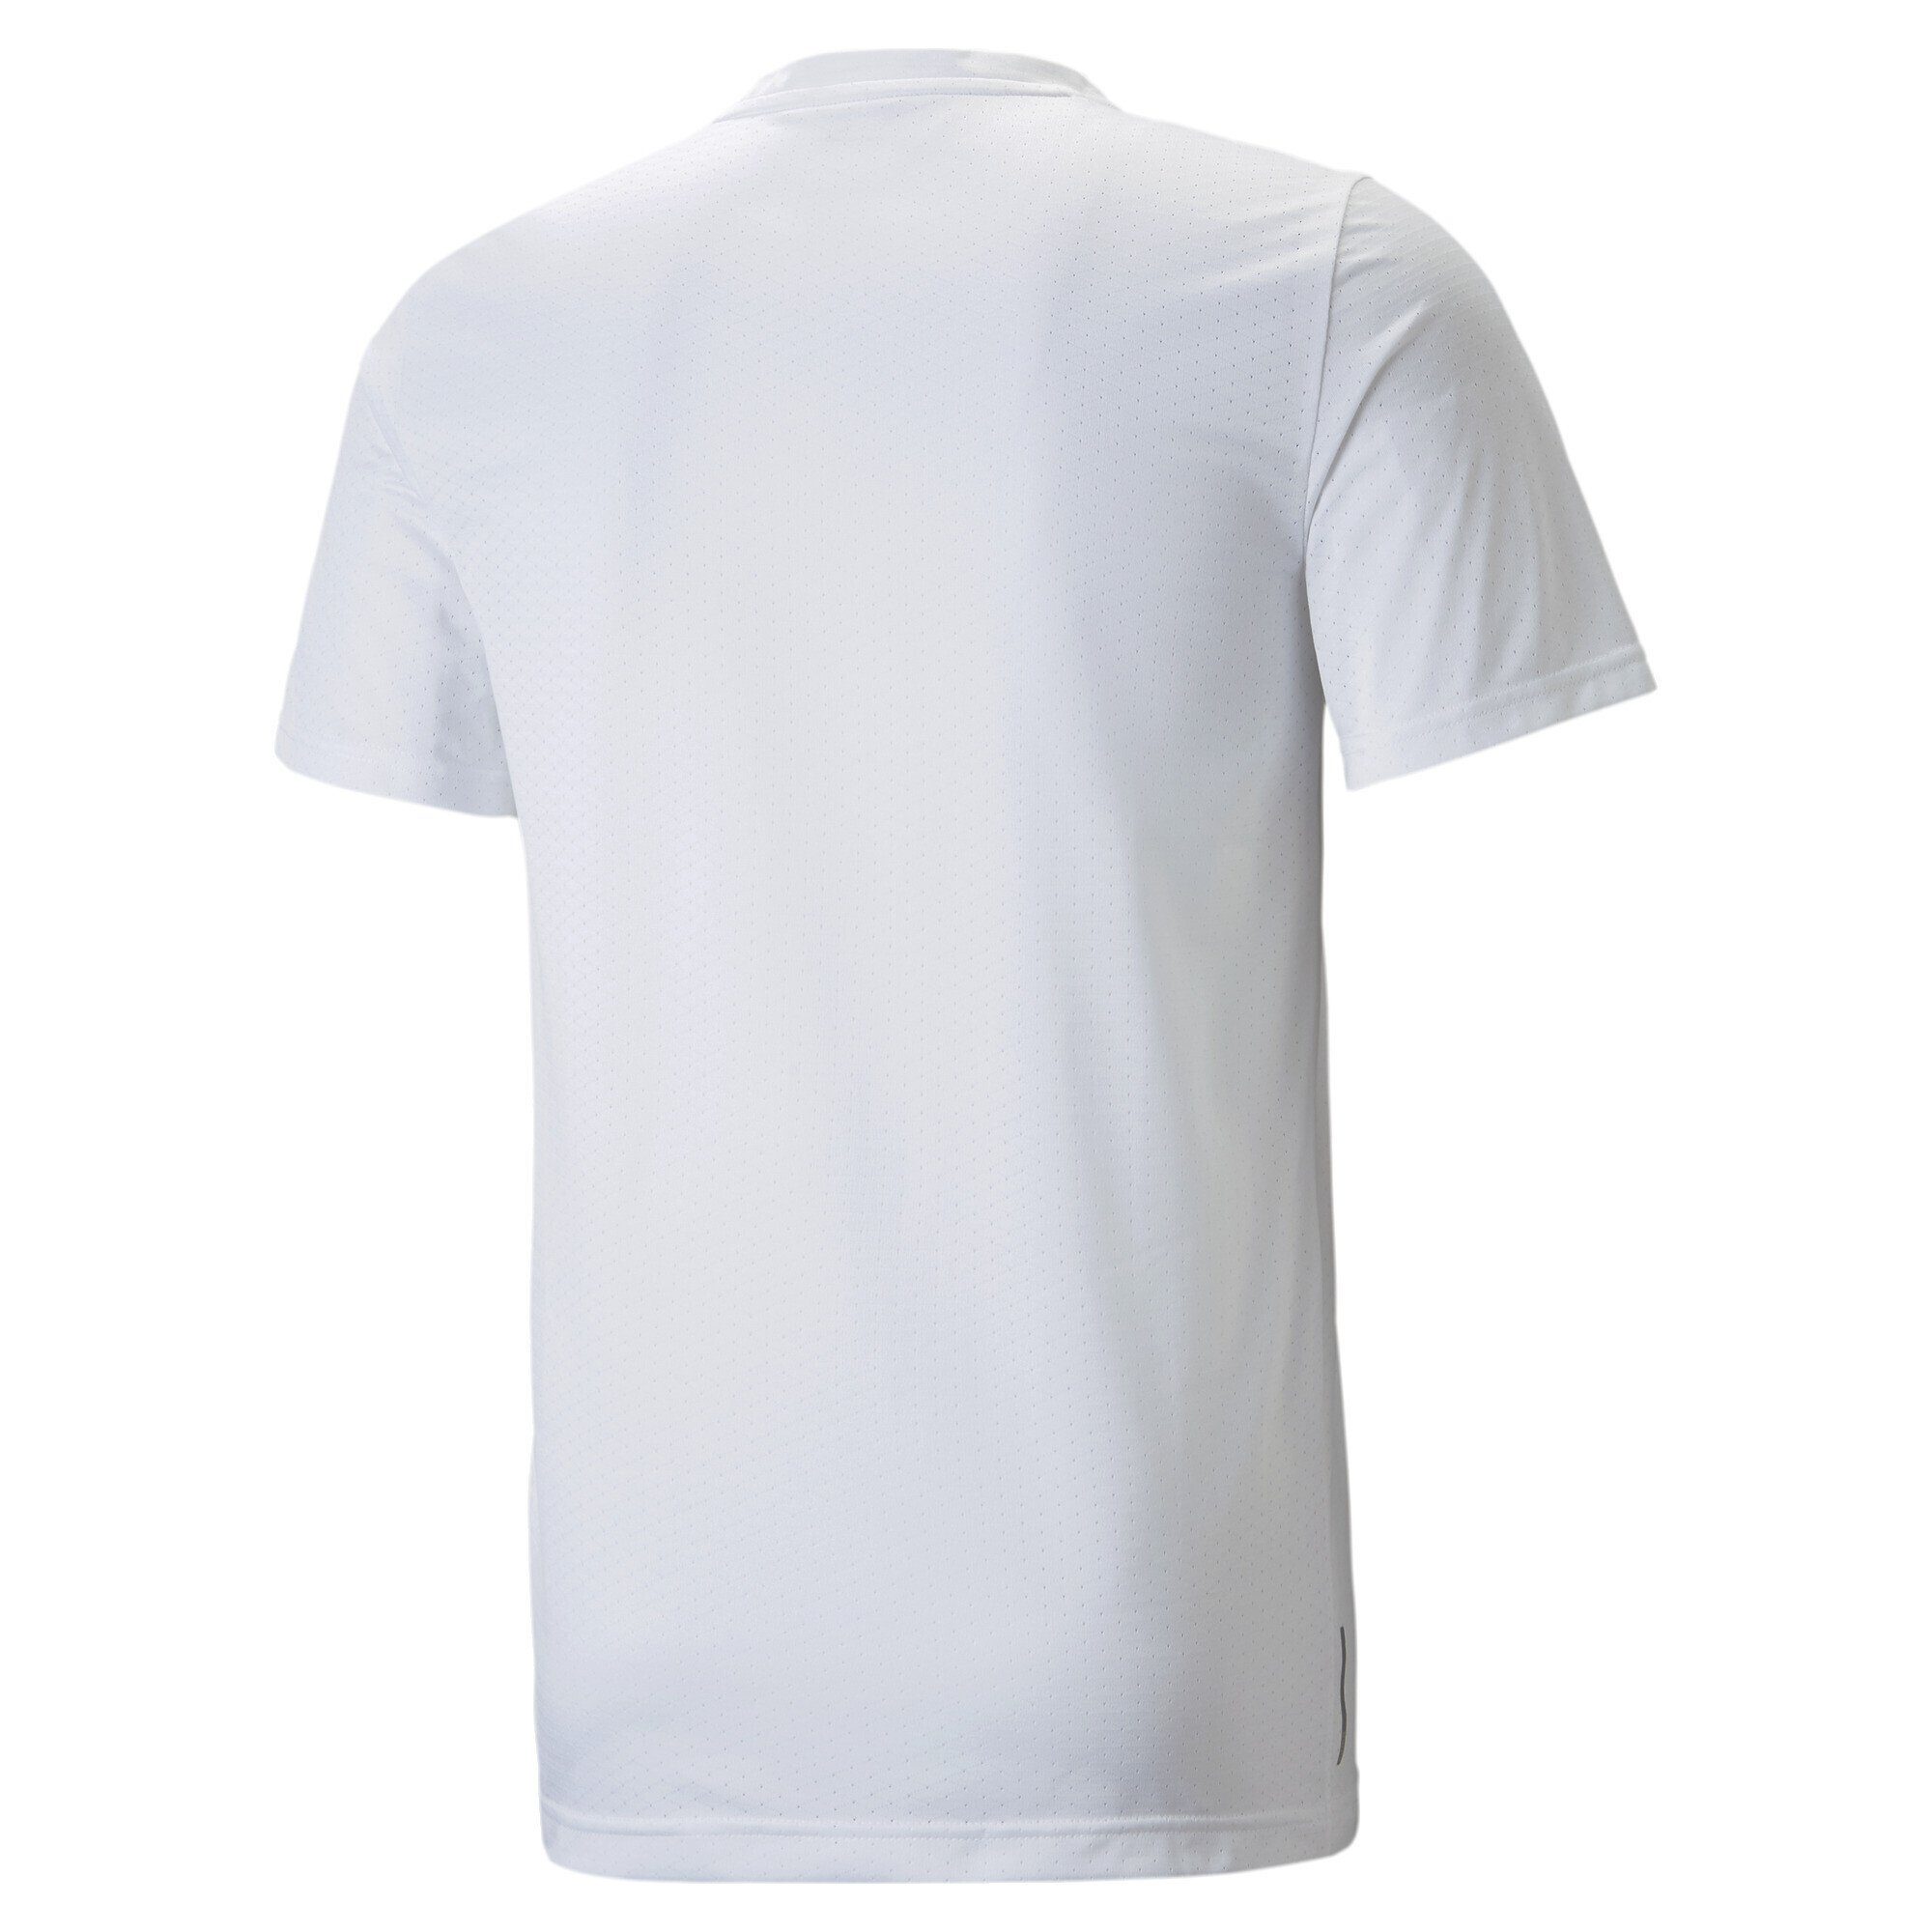 Trainingsshirt White PUMA Blaster Favourite Herren Trainingsshirt